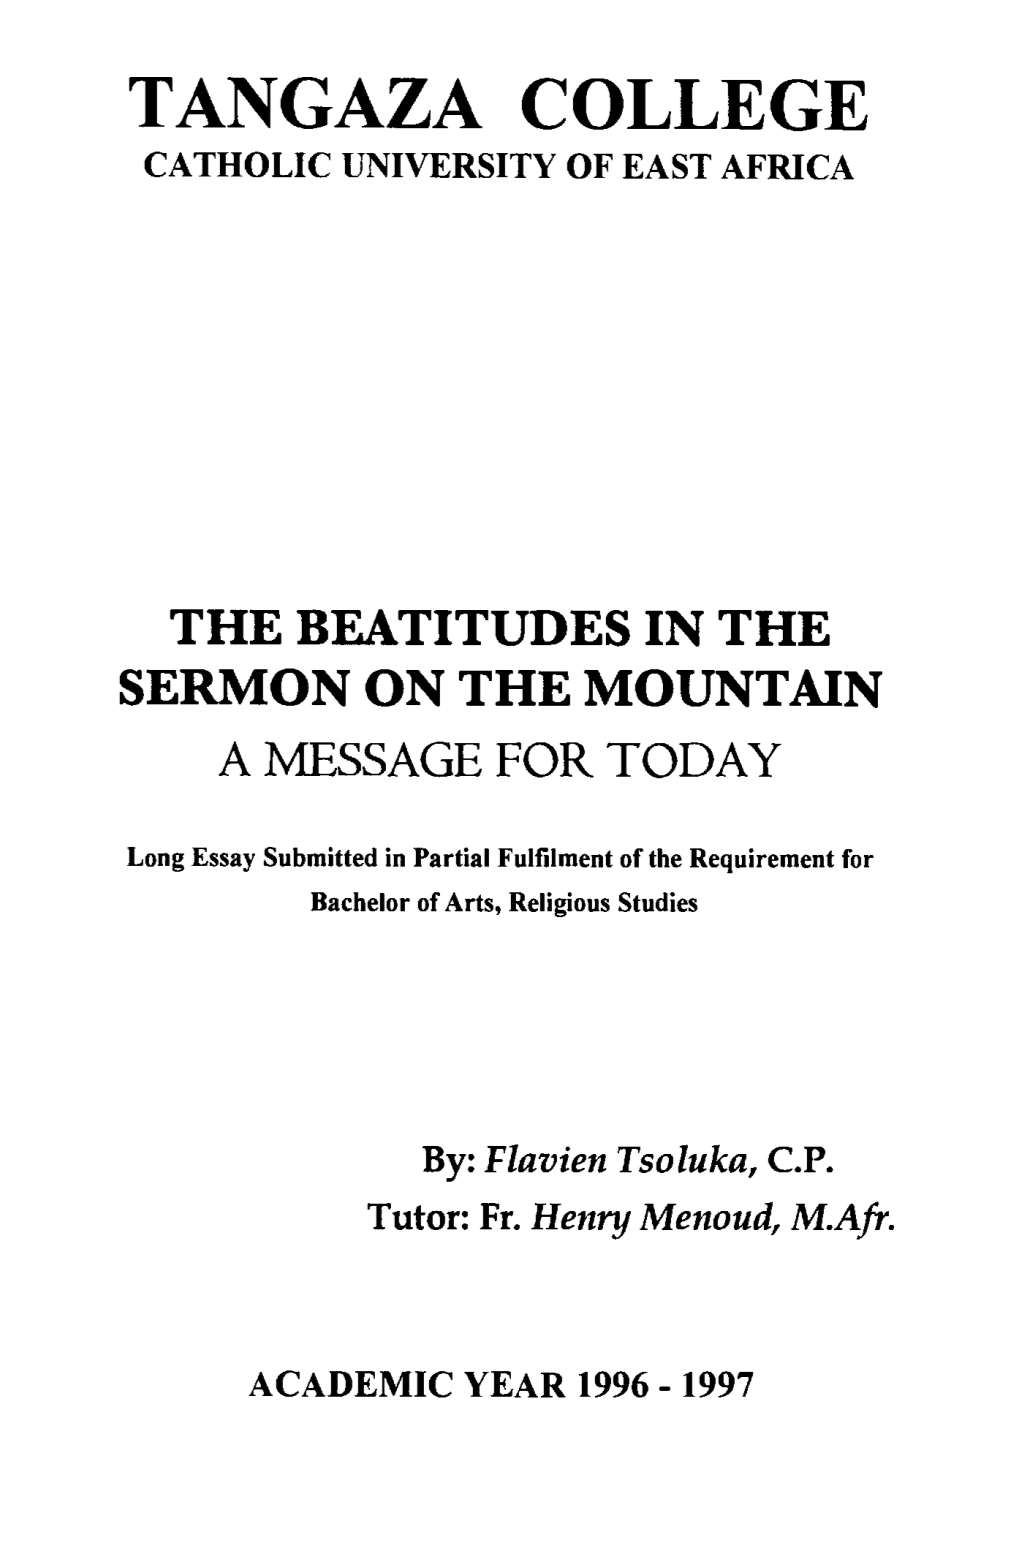 The Beatitudes in the Sermon on the Mountain (590.7Kb)